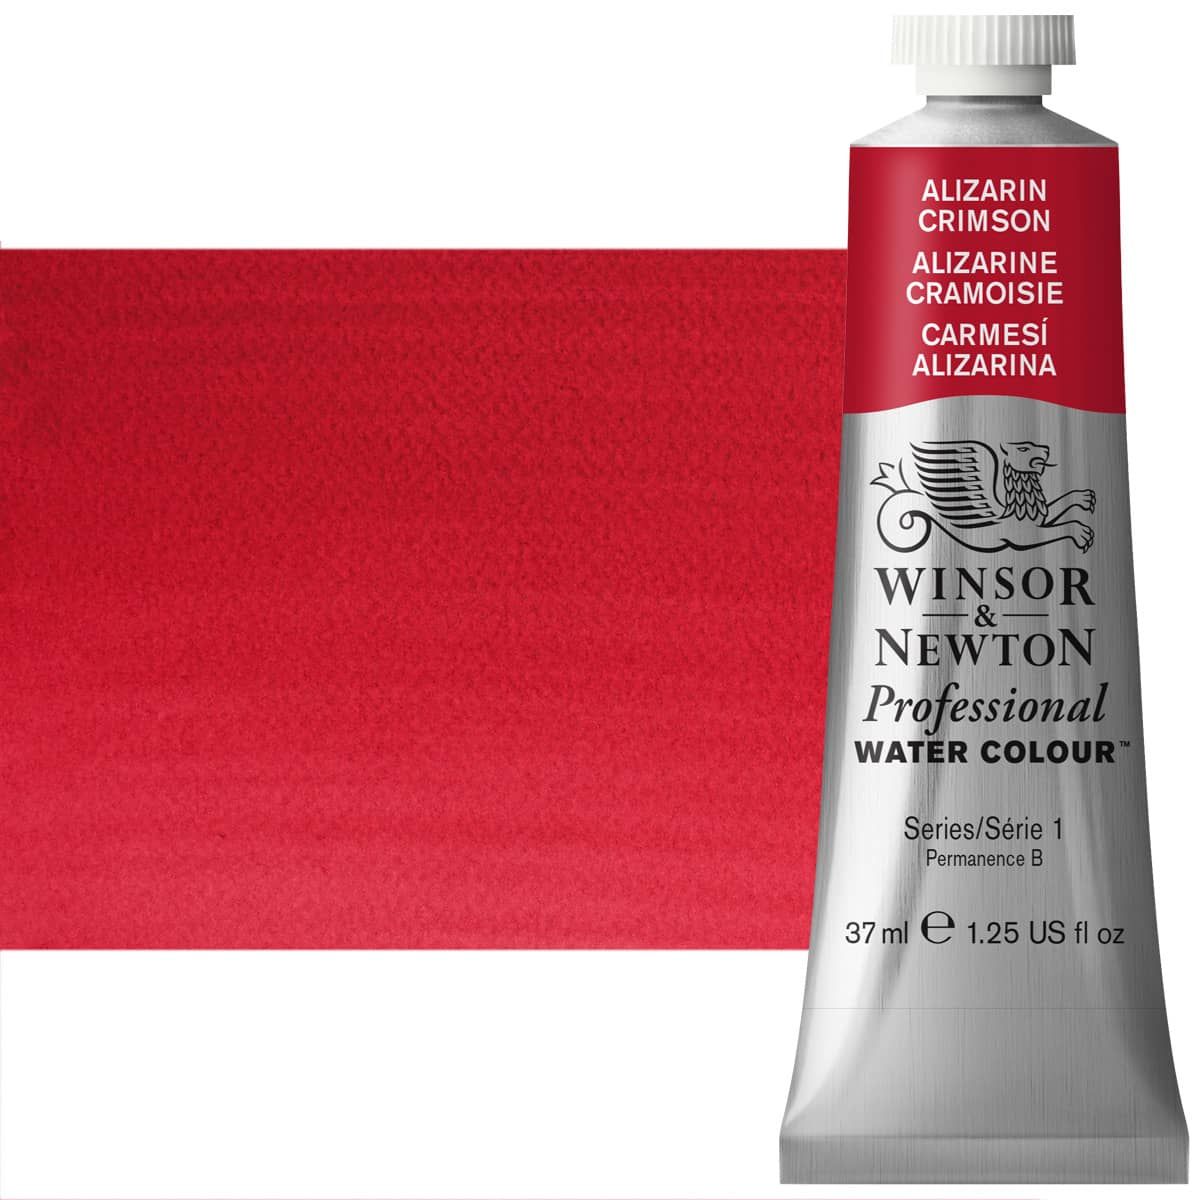 Winsor & Newton Professional Watercolor - Alizarin Crimson, 37ml Tube